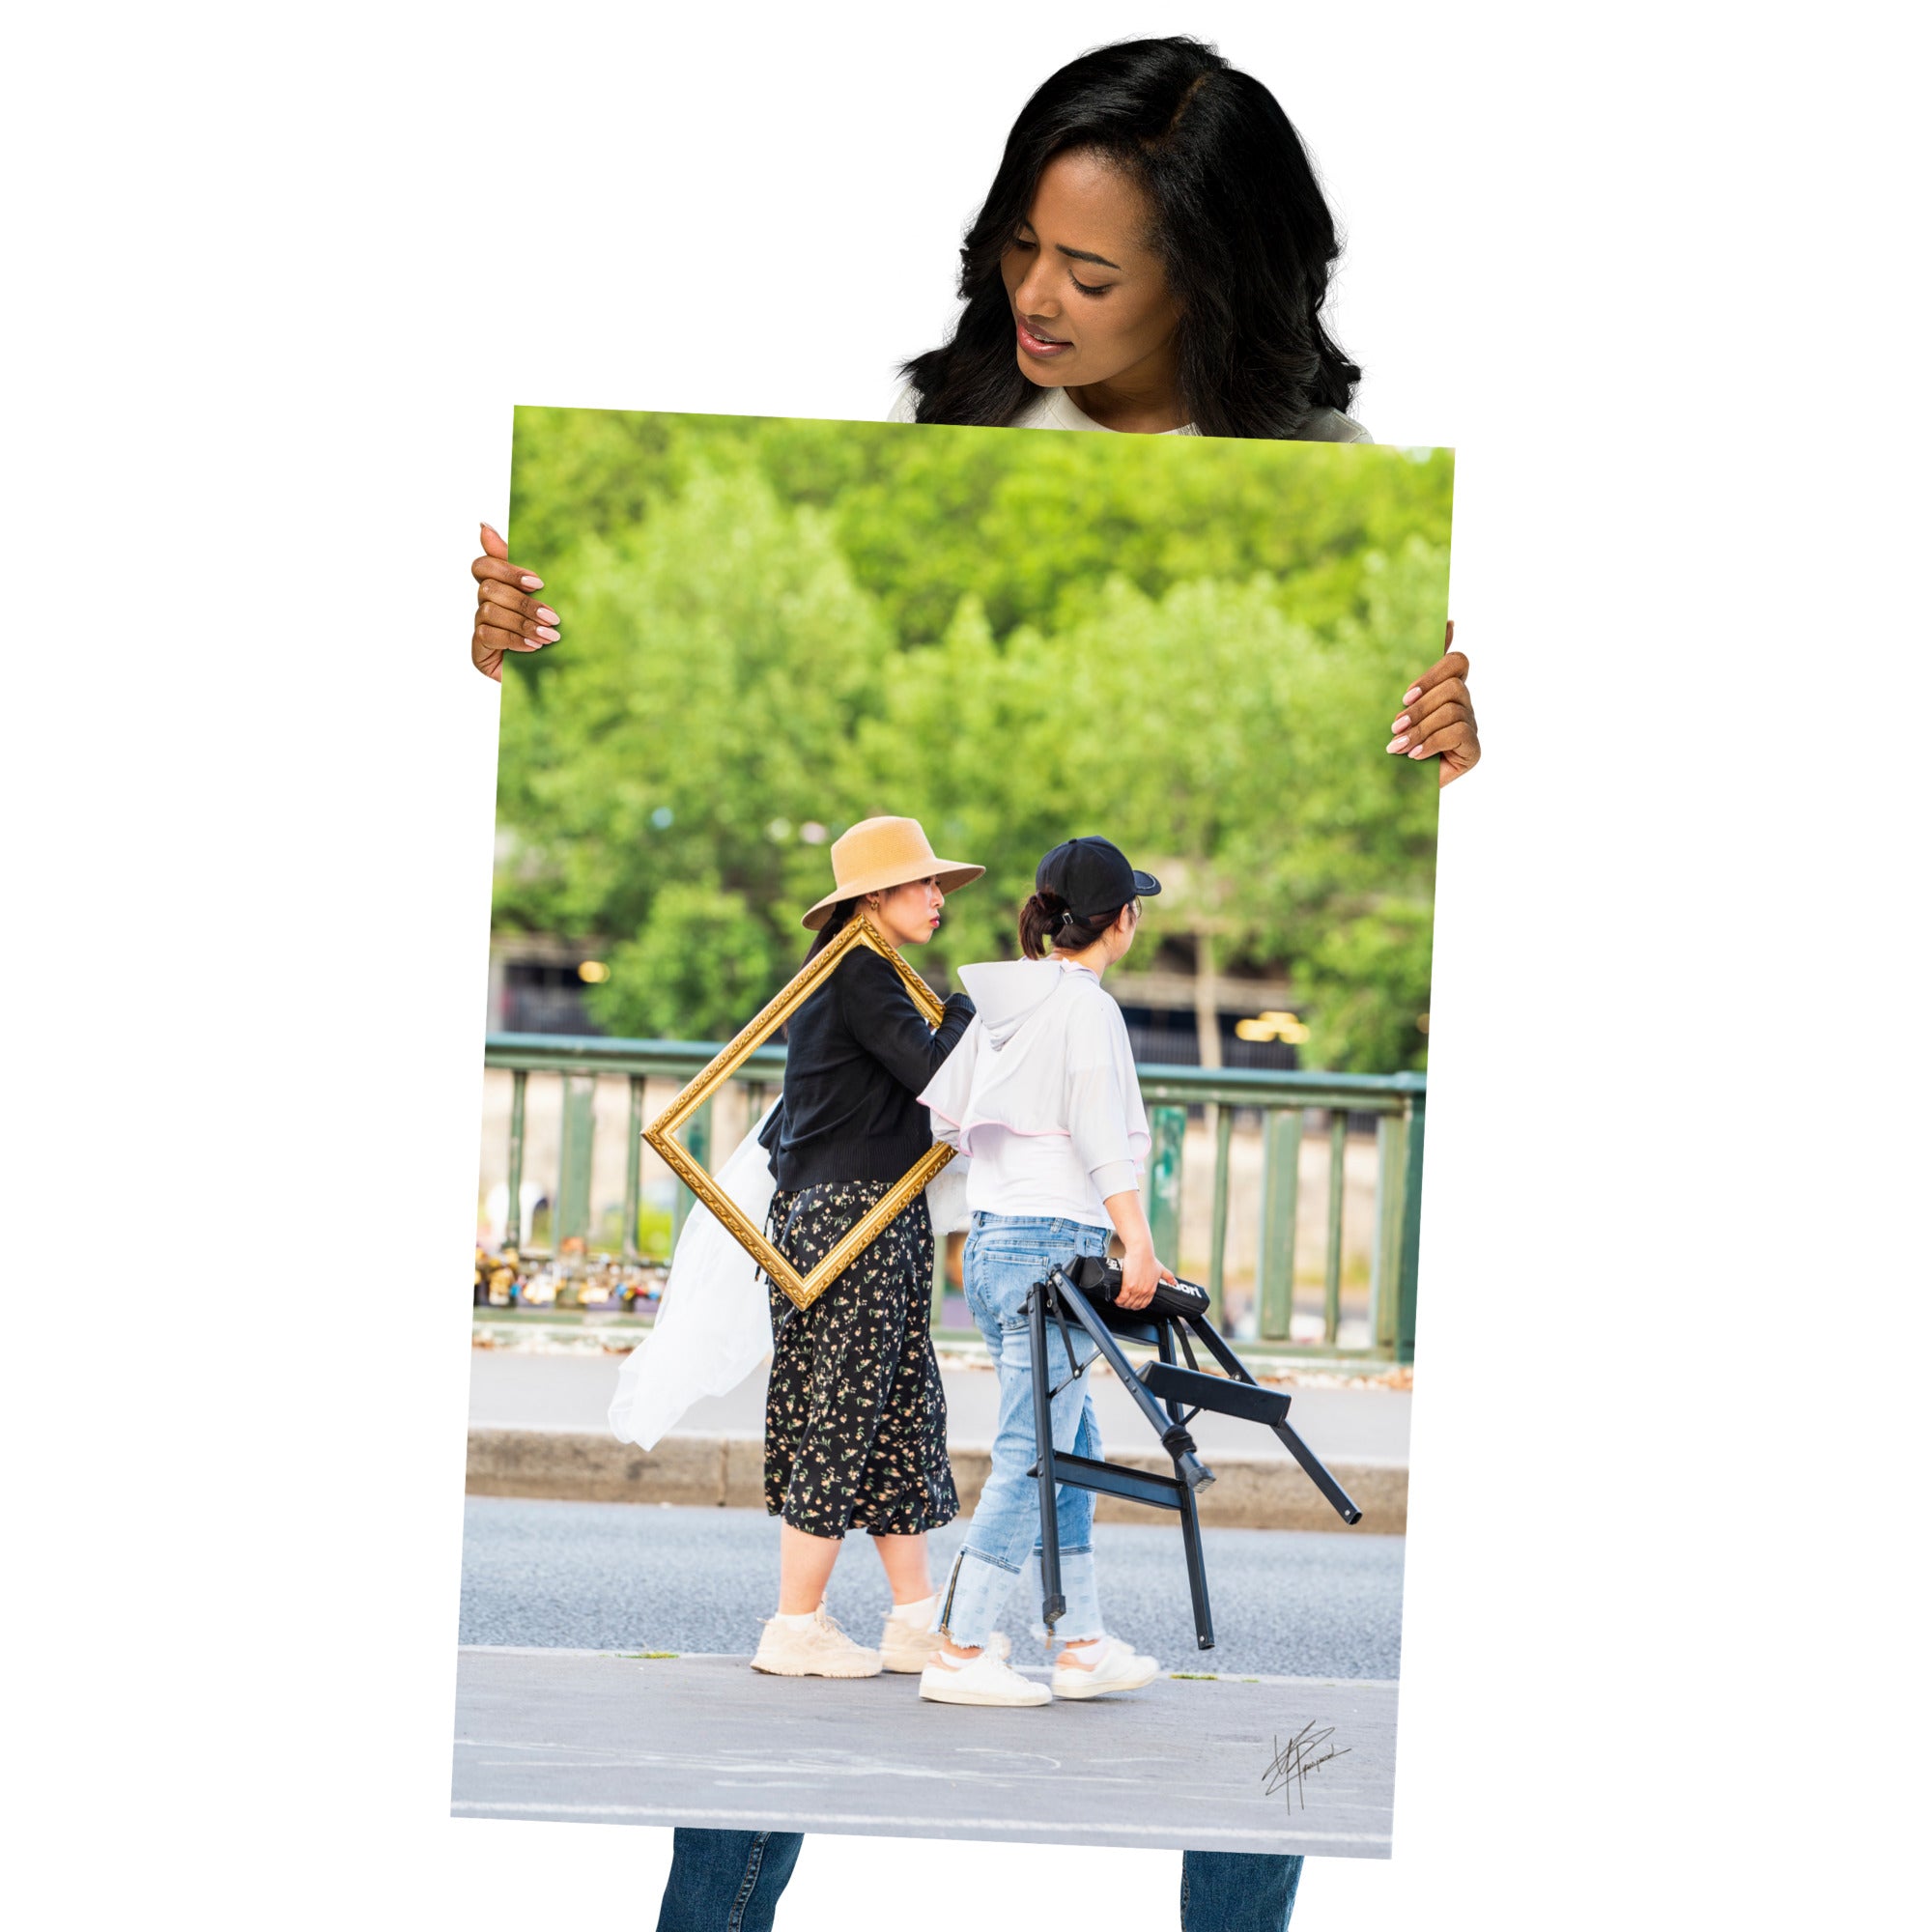 Photographie de deux femmes dans une rue, l'une portant élégamment un cadre en bois, évoquant mystère et art dans le quotidien.